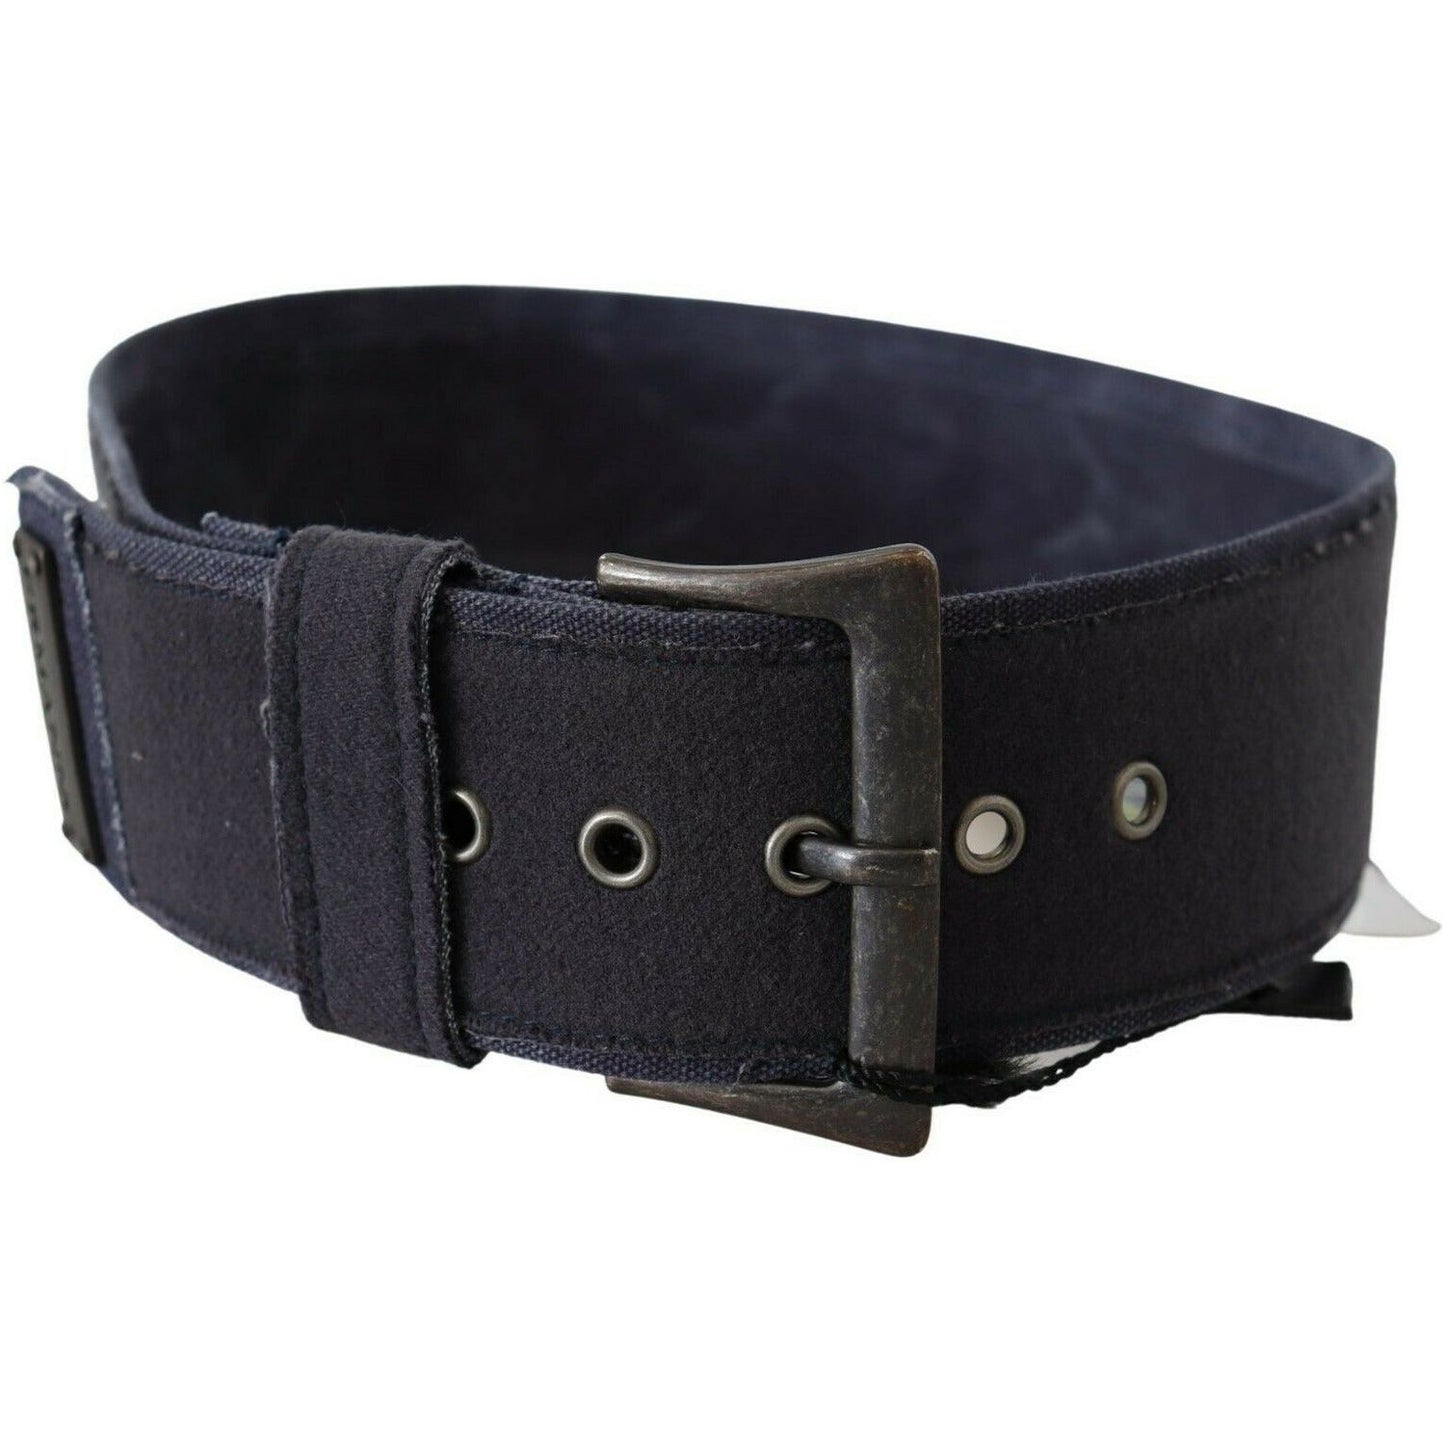 Ermanno Scervino Elegant Navy Blue Leather Waist Belt black-navy-blue-wide-square-rustic-buckle-belt